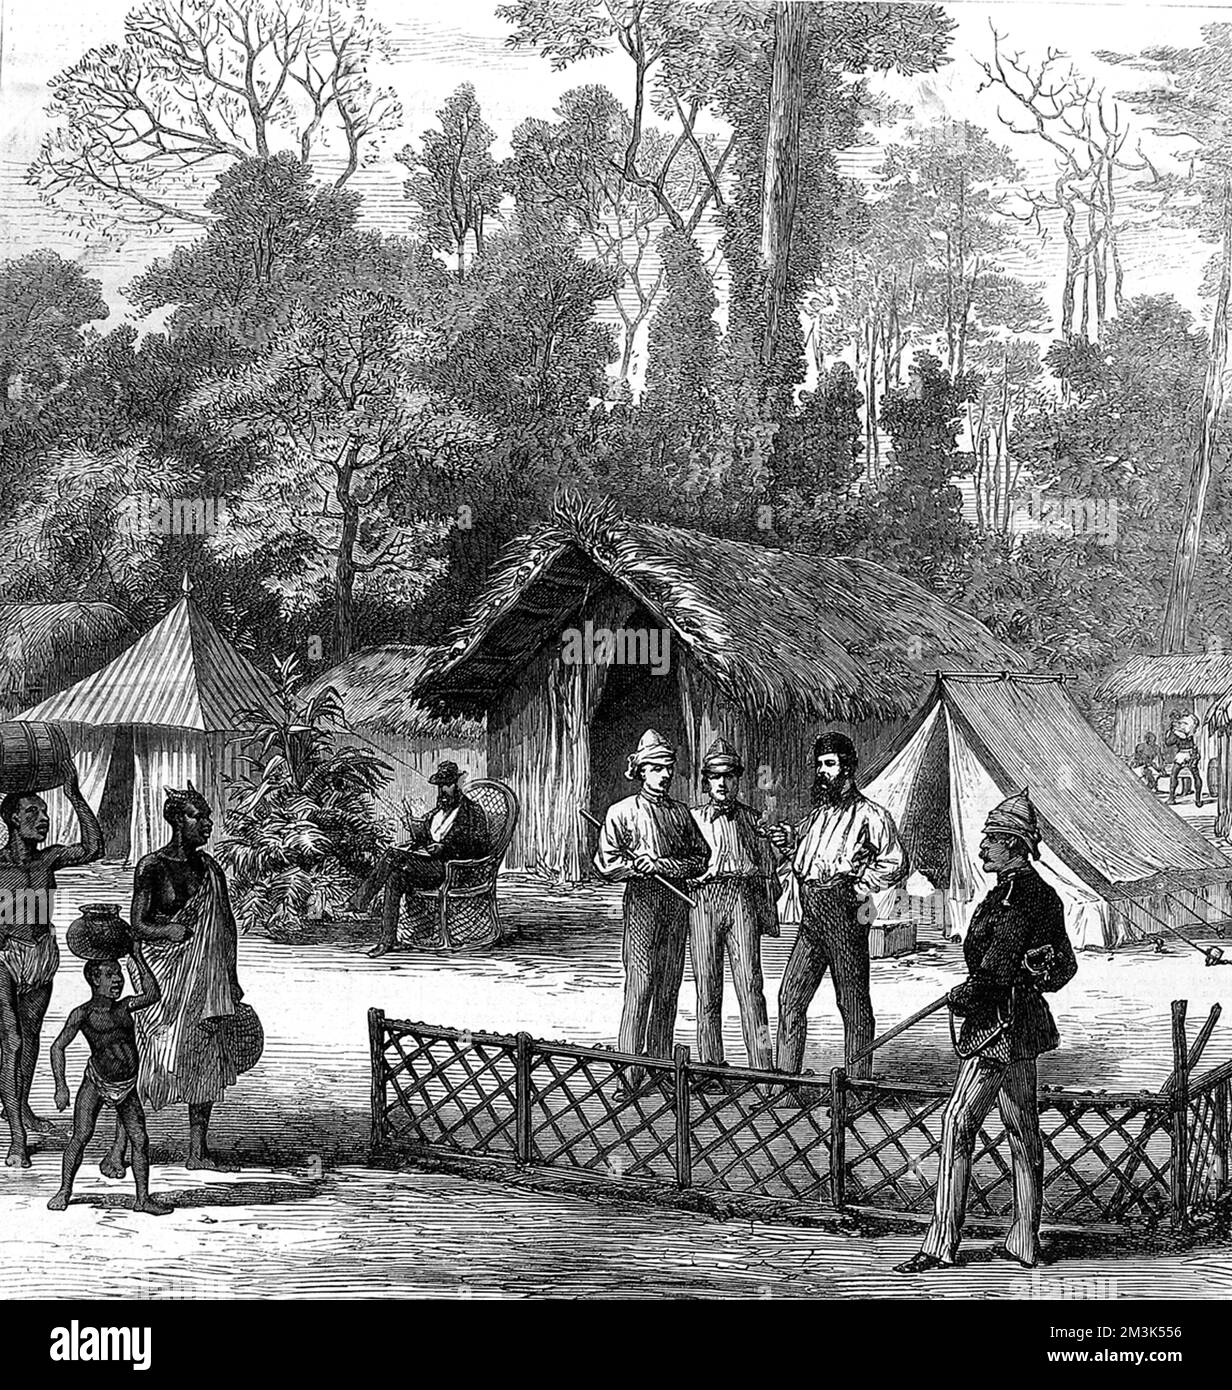 Quartiers des correspondants des journaux dans le camp de Prahsu. L'homme assis est le correspondant du temps. Parmi les trois hommes réunis, on peut citer le New York Herald, The Illustrated London News (milieu) et les journaux Standard pour faire rapport sur la guerre. La deuxième guerre d'Ashanti entre,1873-74, fut entre le roi Kofi Karikari, dirigeant des Ashanti (ou Asantehene), et les Britanniques. Tous deux tentaient de sécuriser la ville côtière d'Elmina sur la côte ouest de l'Afrique, également connue sous le nom de Gold Coast. Date: 1874 Banque D'Images